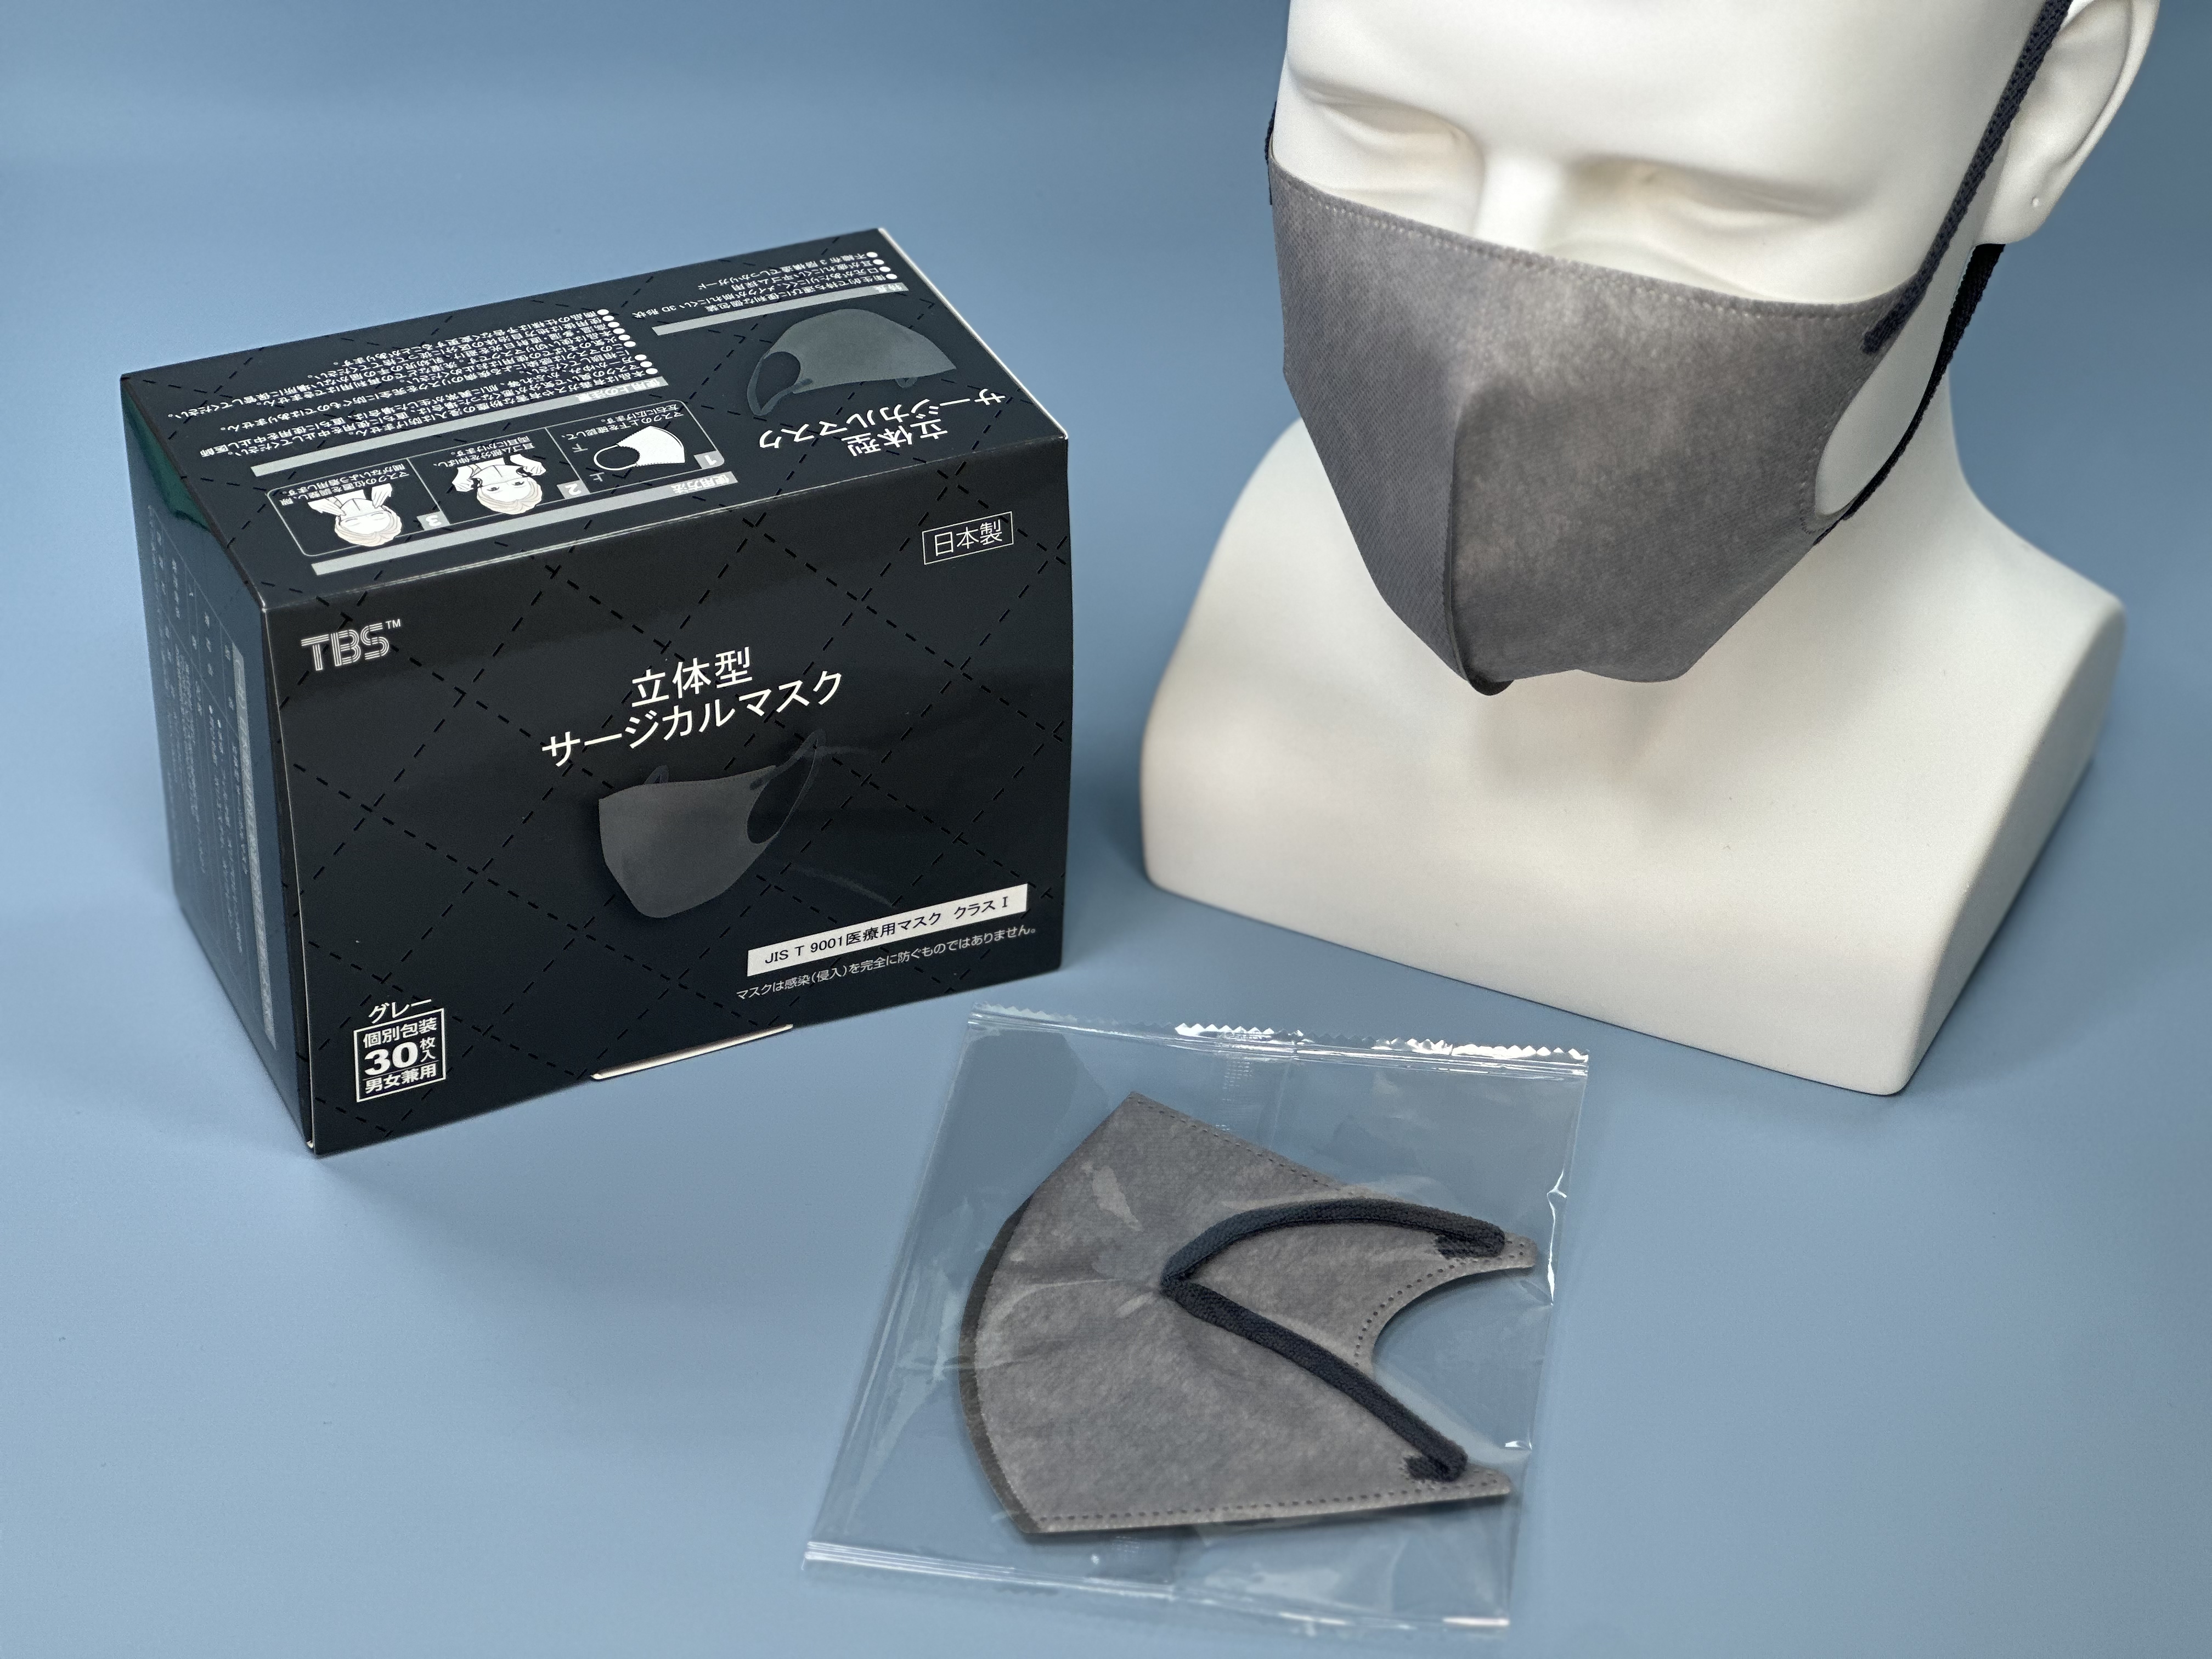 つばさ(Tsubasa) 日本製 TBS 立体型サージカルマスク・個包装・3層構造 (JIS T9001 医療用マスク クラスⅠ適合審査合格品) 医療用立体マスク グレー/フリーサイズ 1BOX-30枚入り